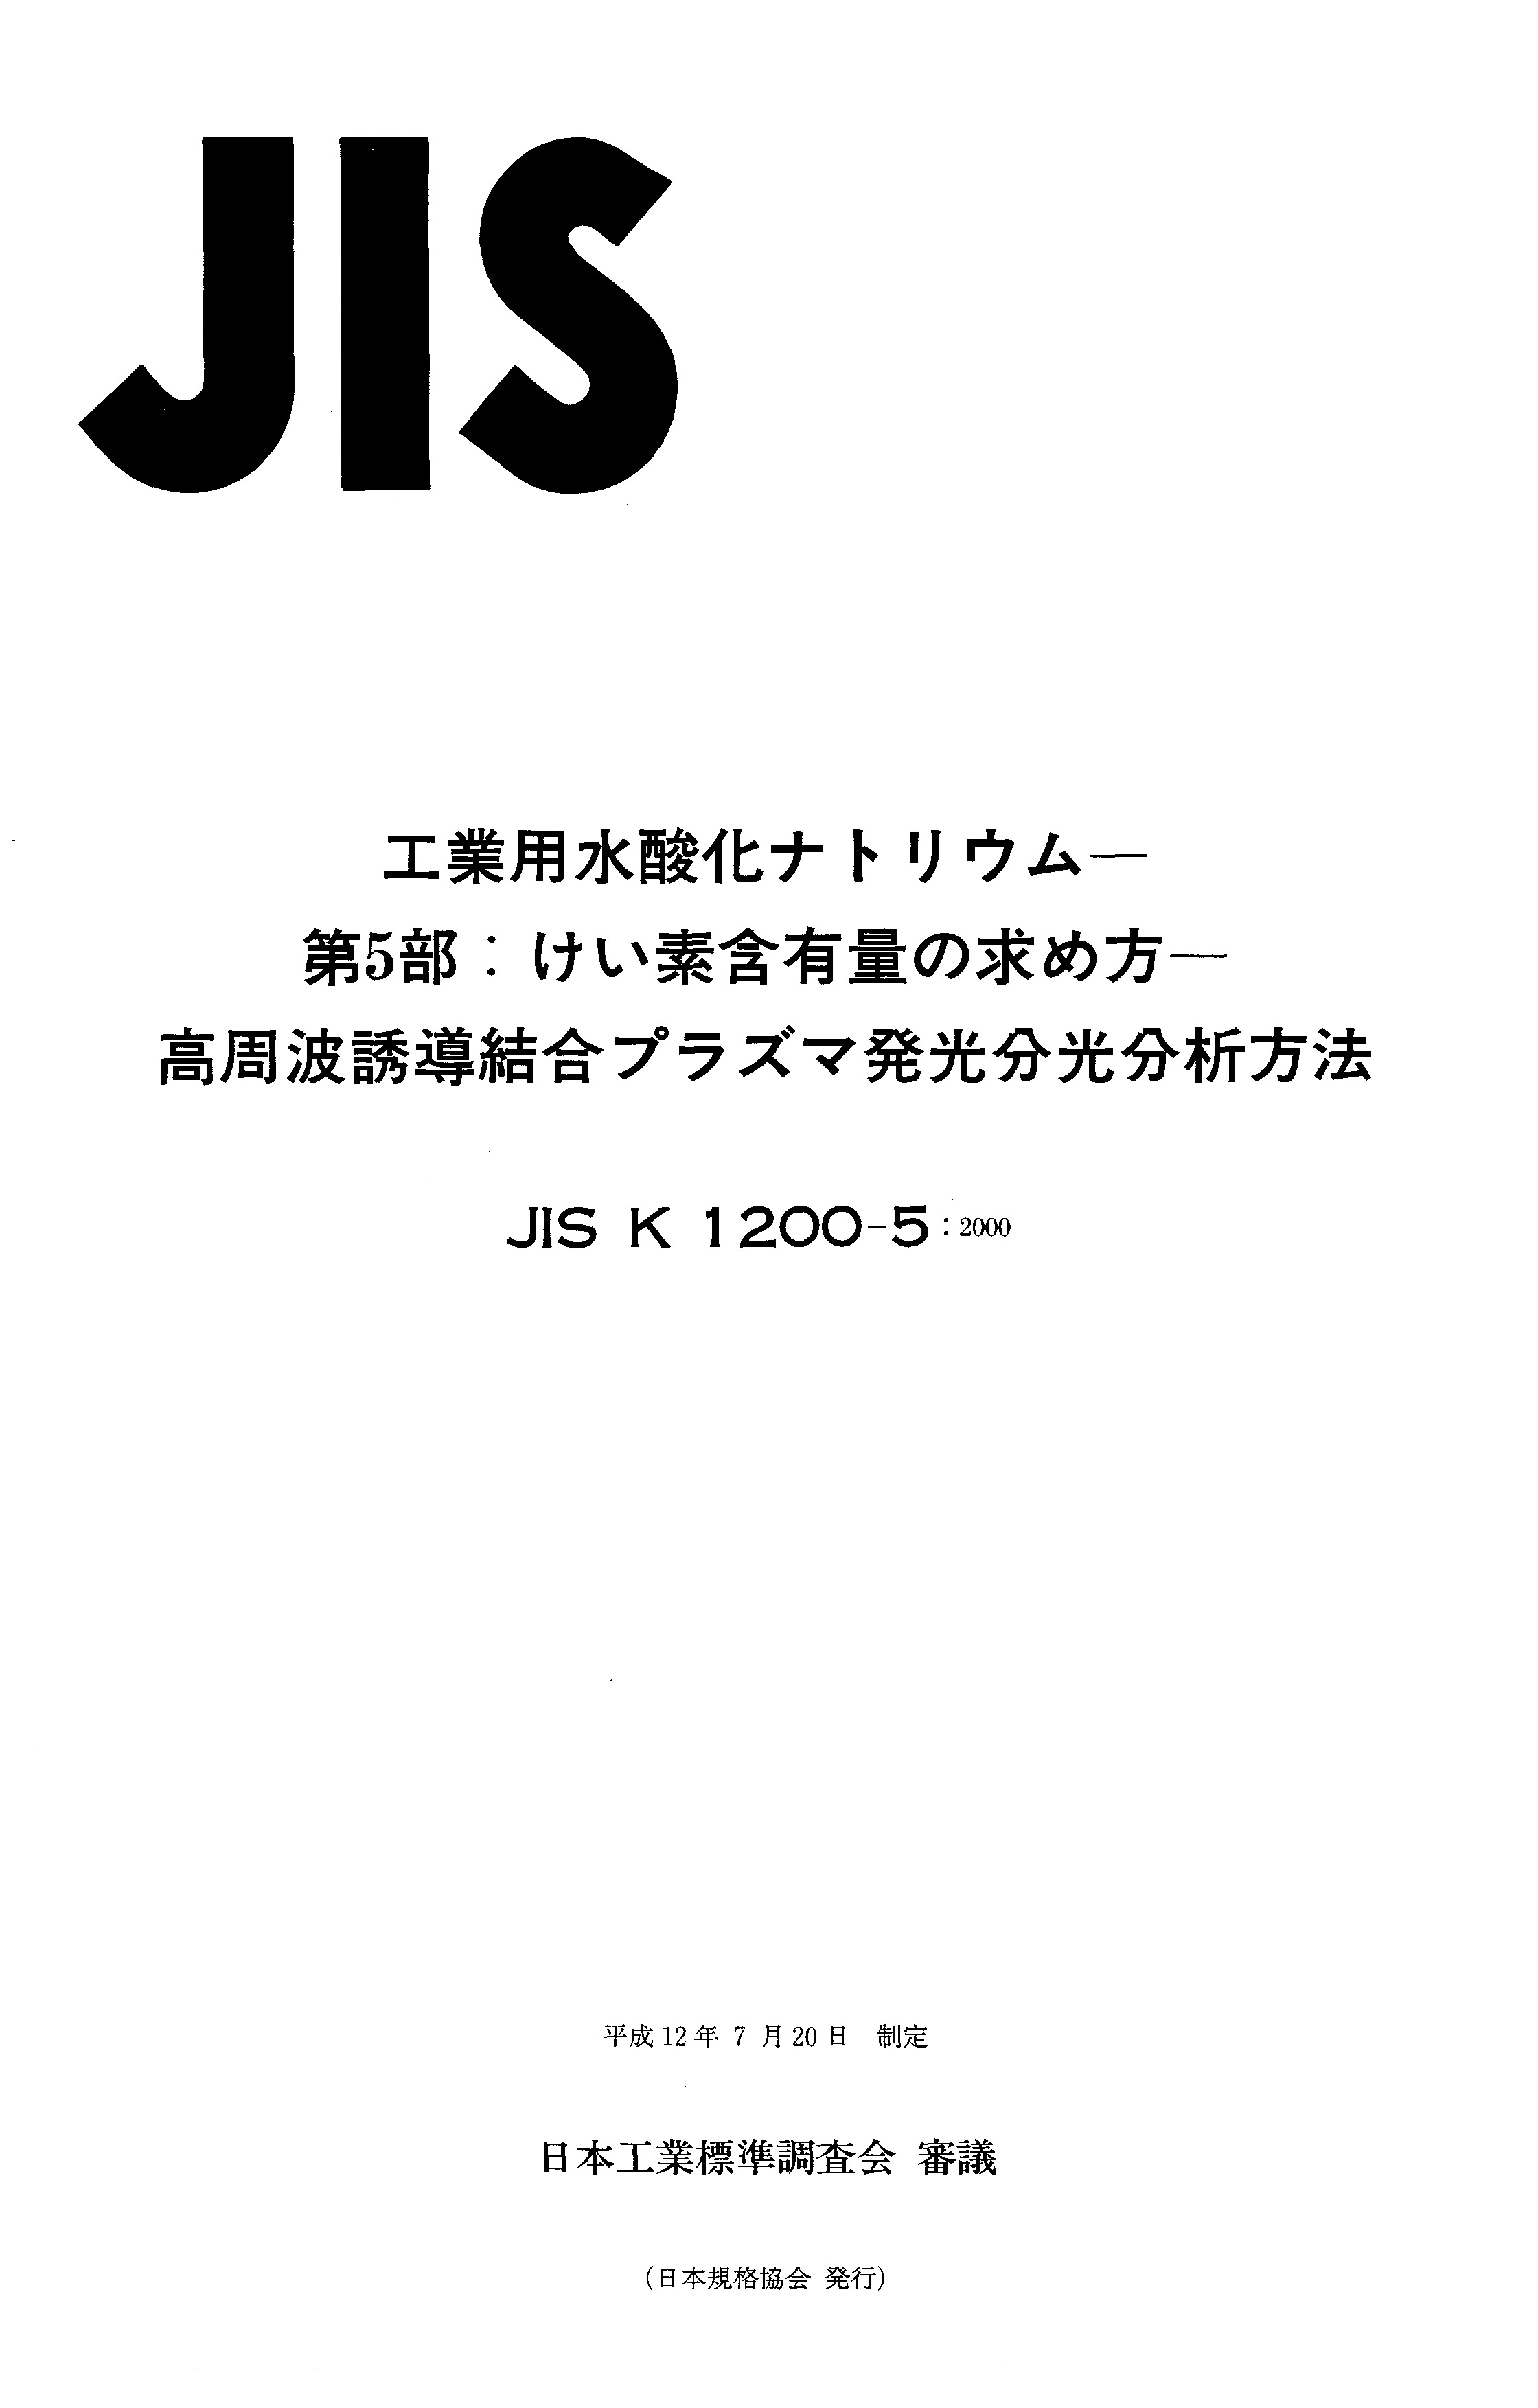 JIS K 1200-5:2000封面图